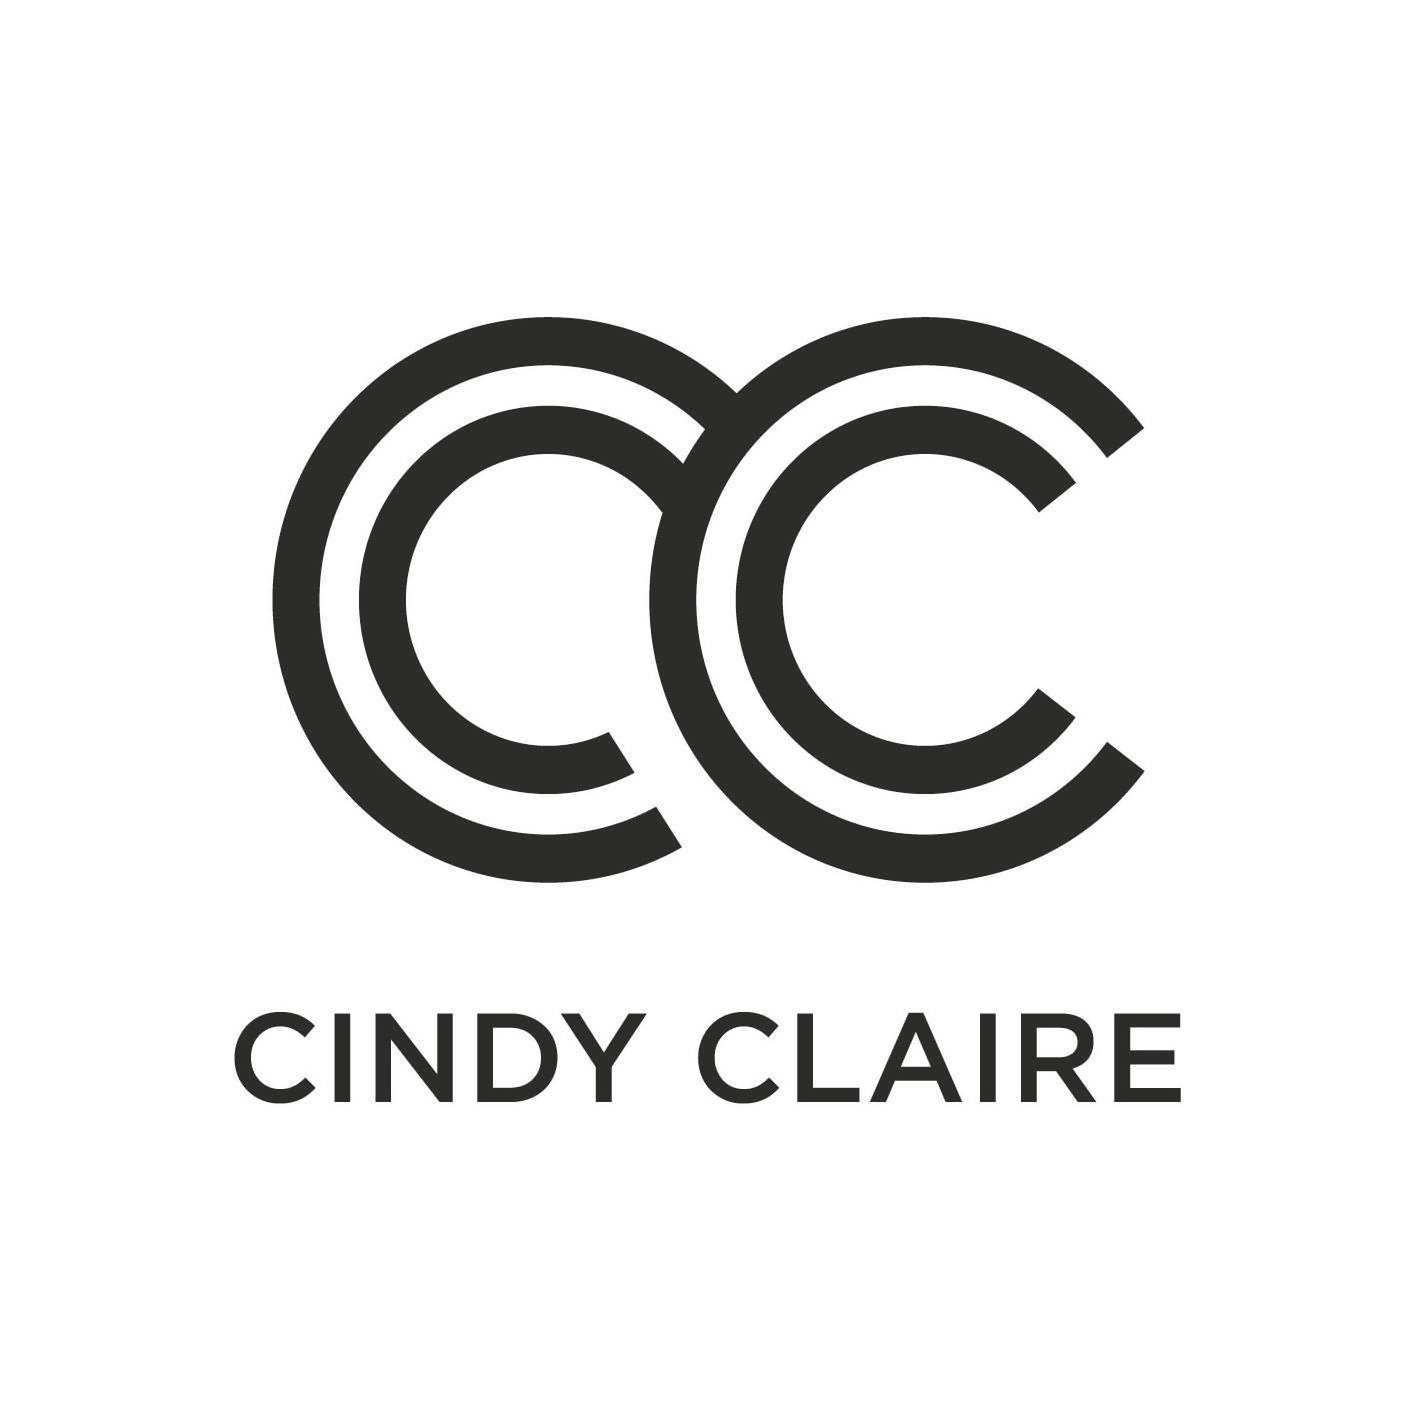  CC CINDY CLAIRE